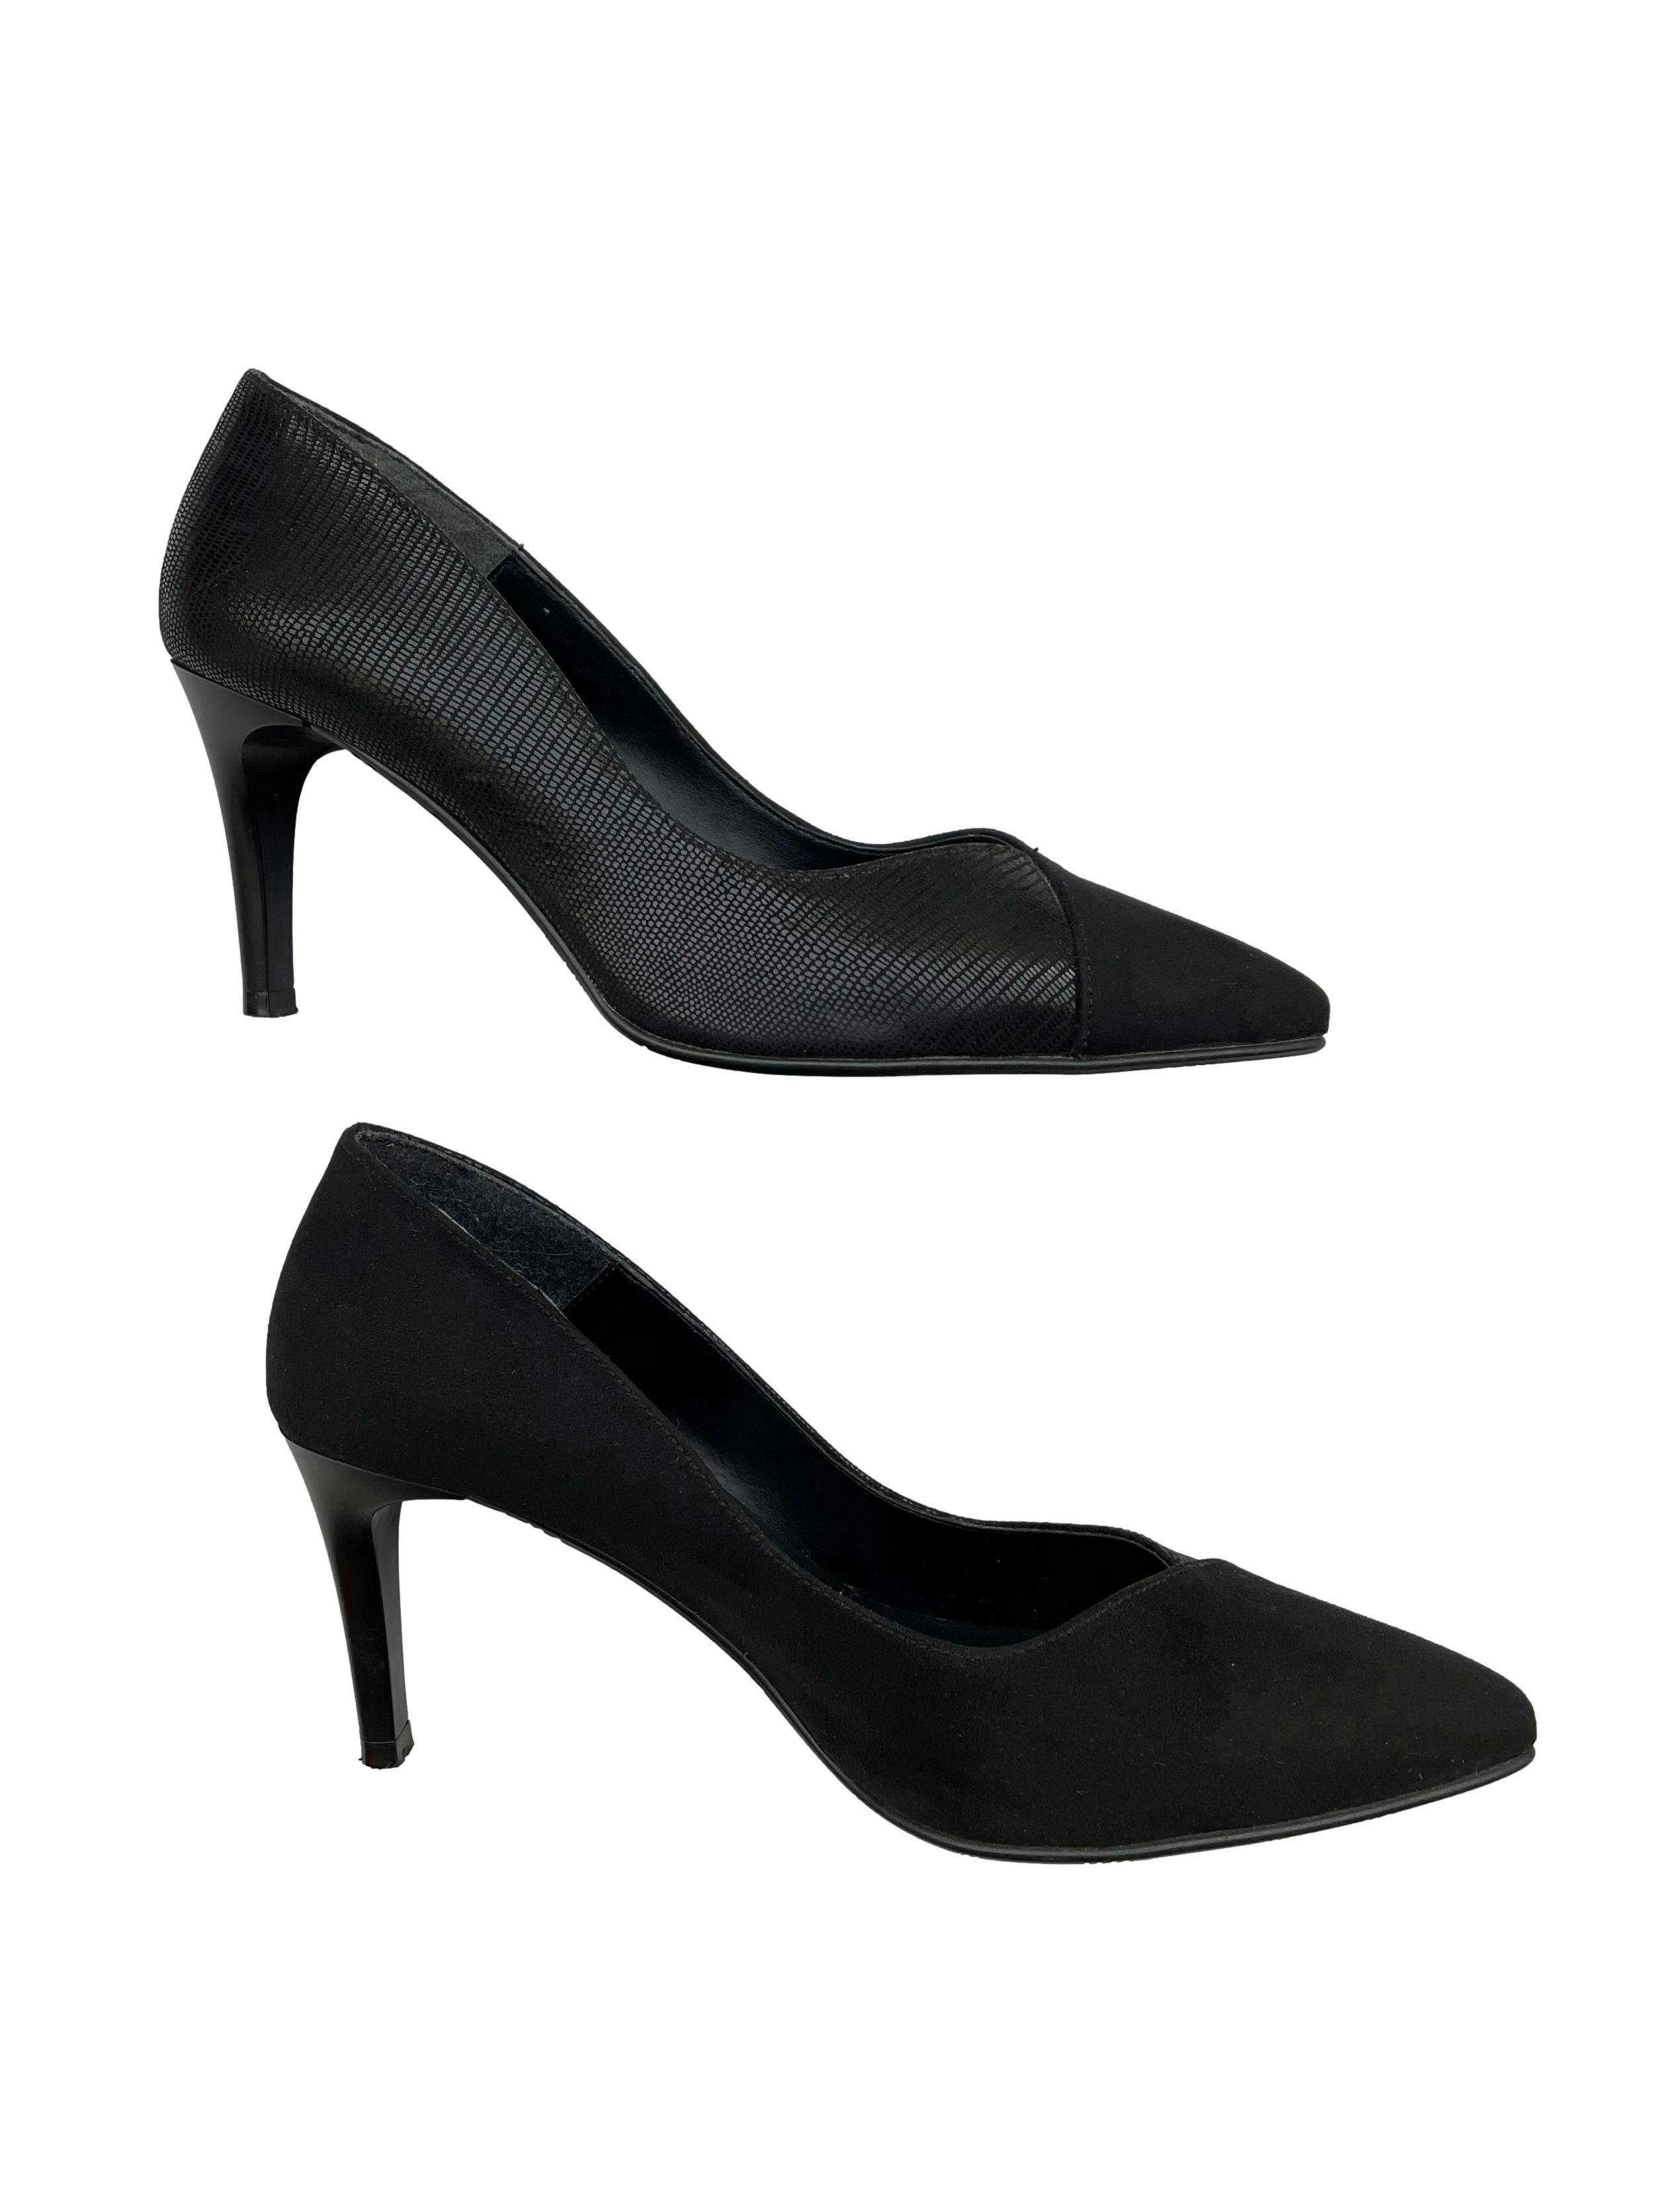 Zapatos Daniela Vega de textil negro con textura y tipo gamuza, modelo en punta, taco 7cm. Estado 9/10